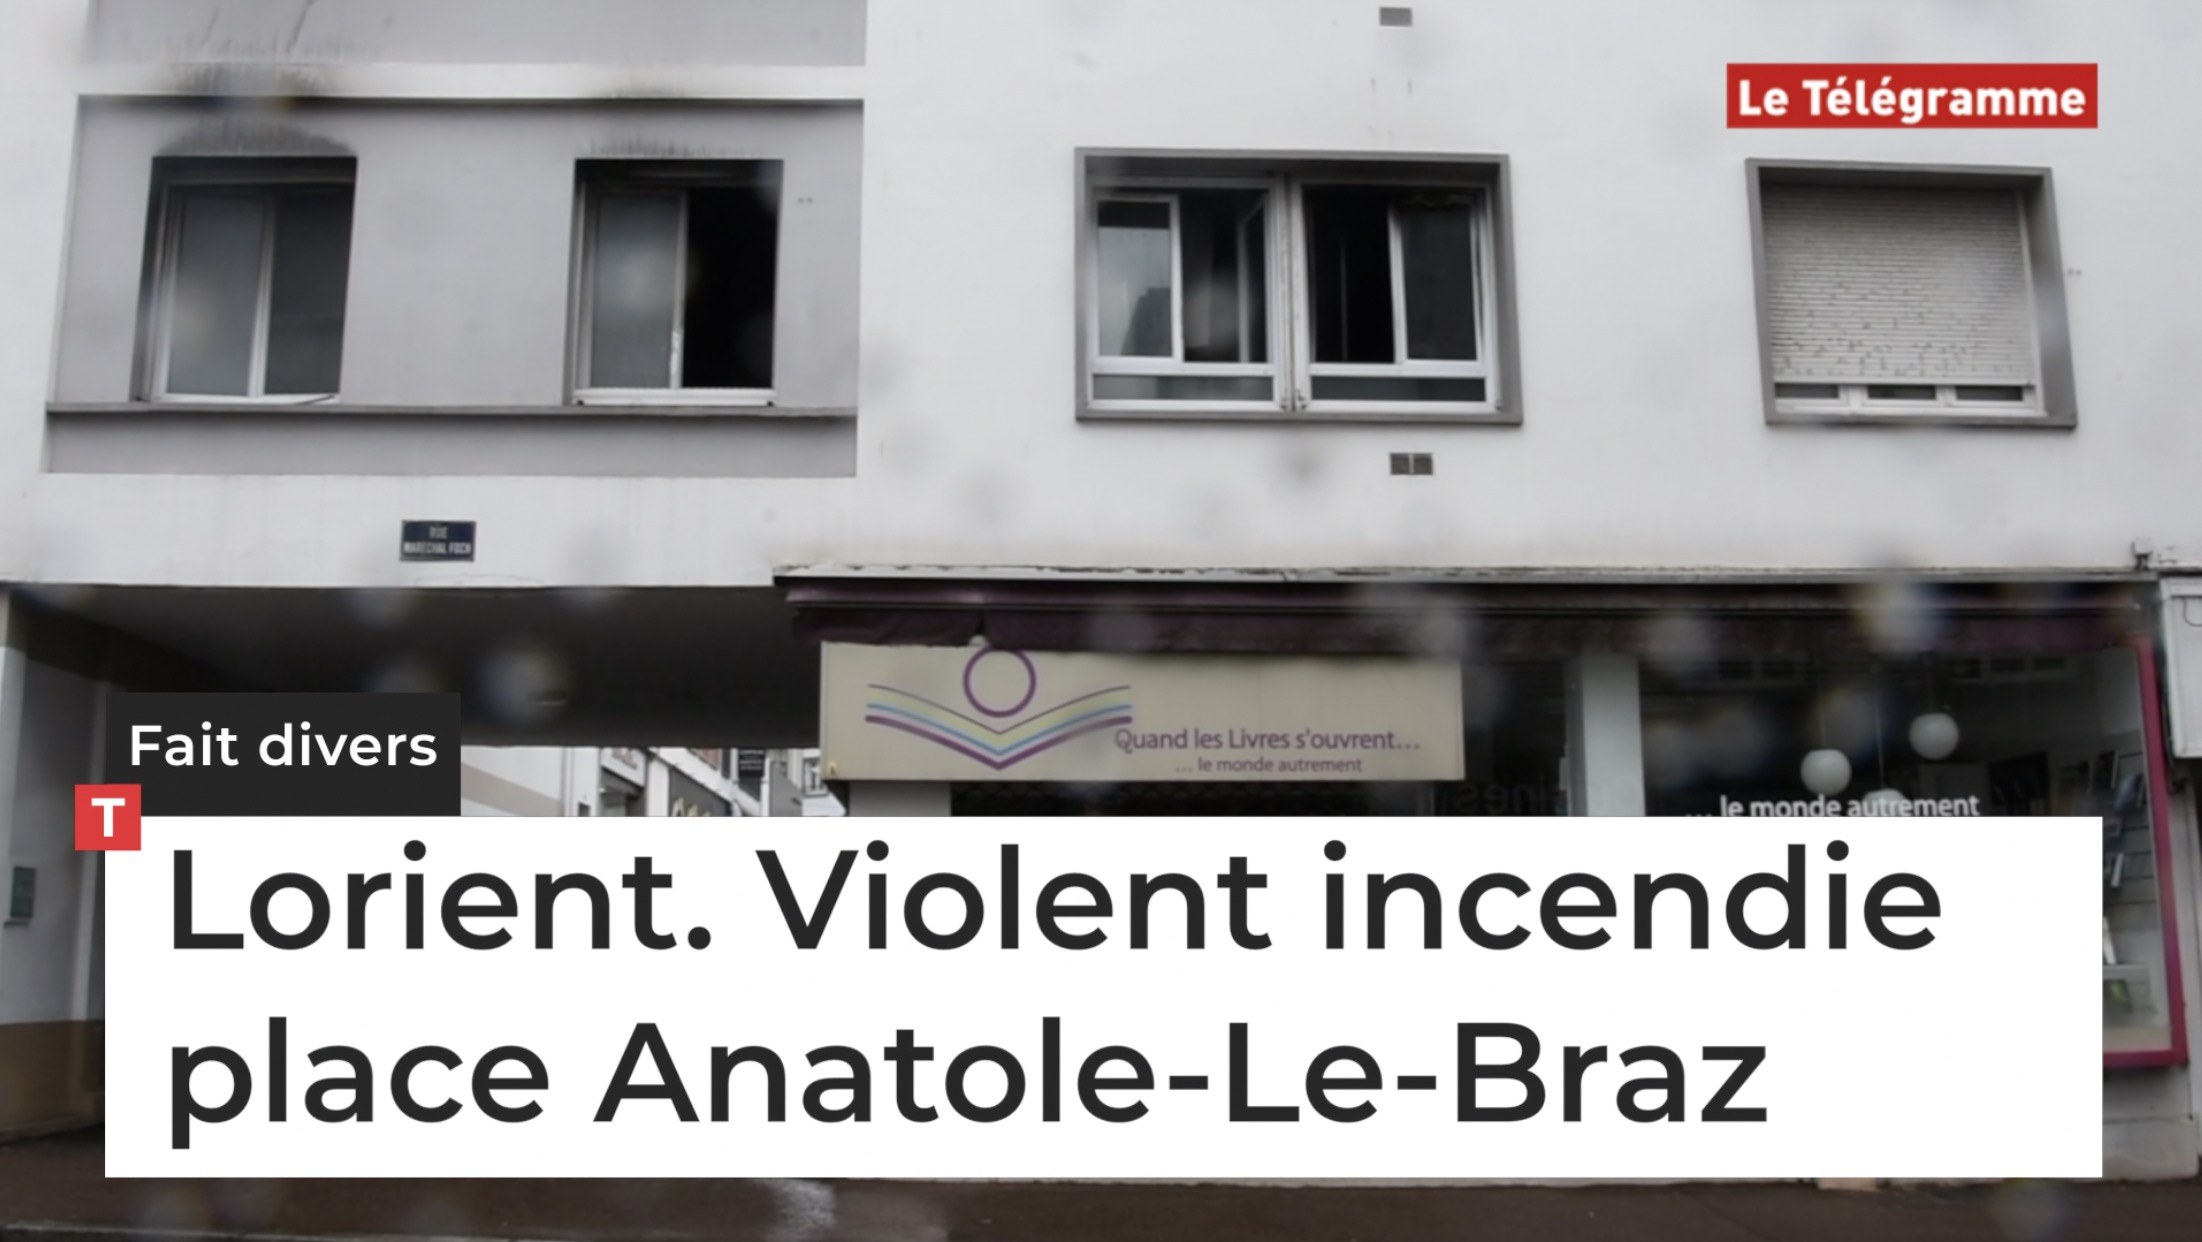 Lorient. Violent incendie place Anatole-Le-Braz (Le Télégramme)